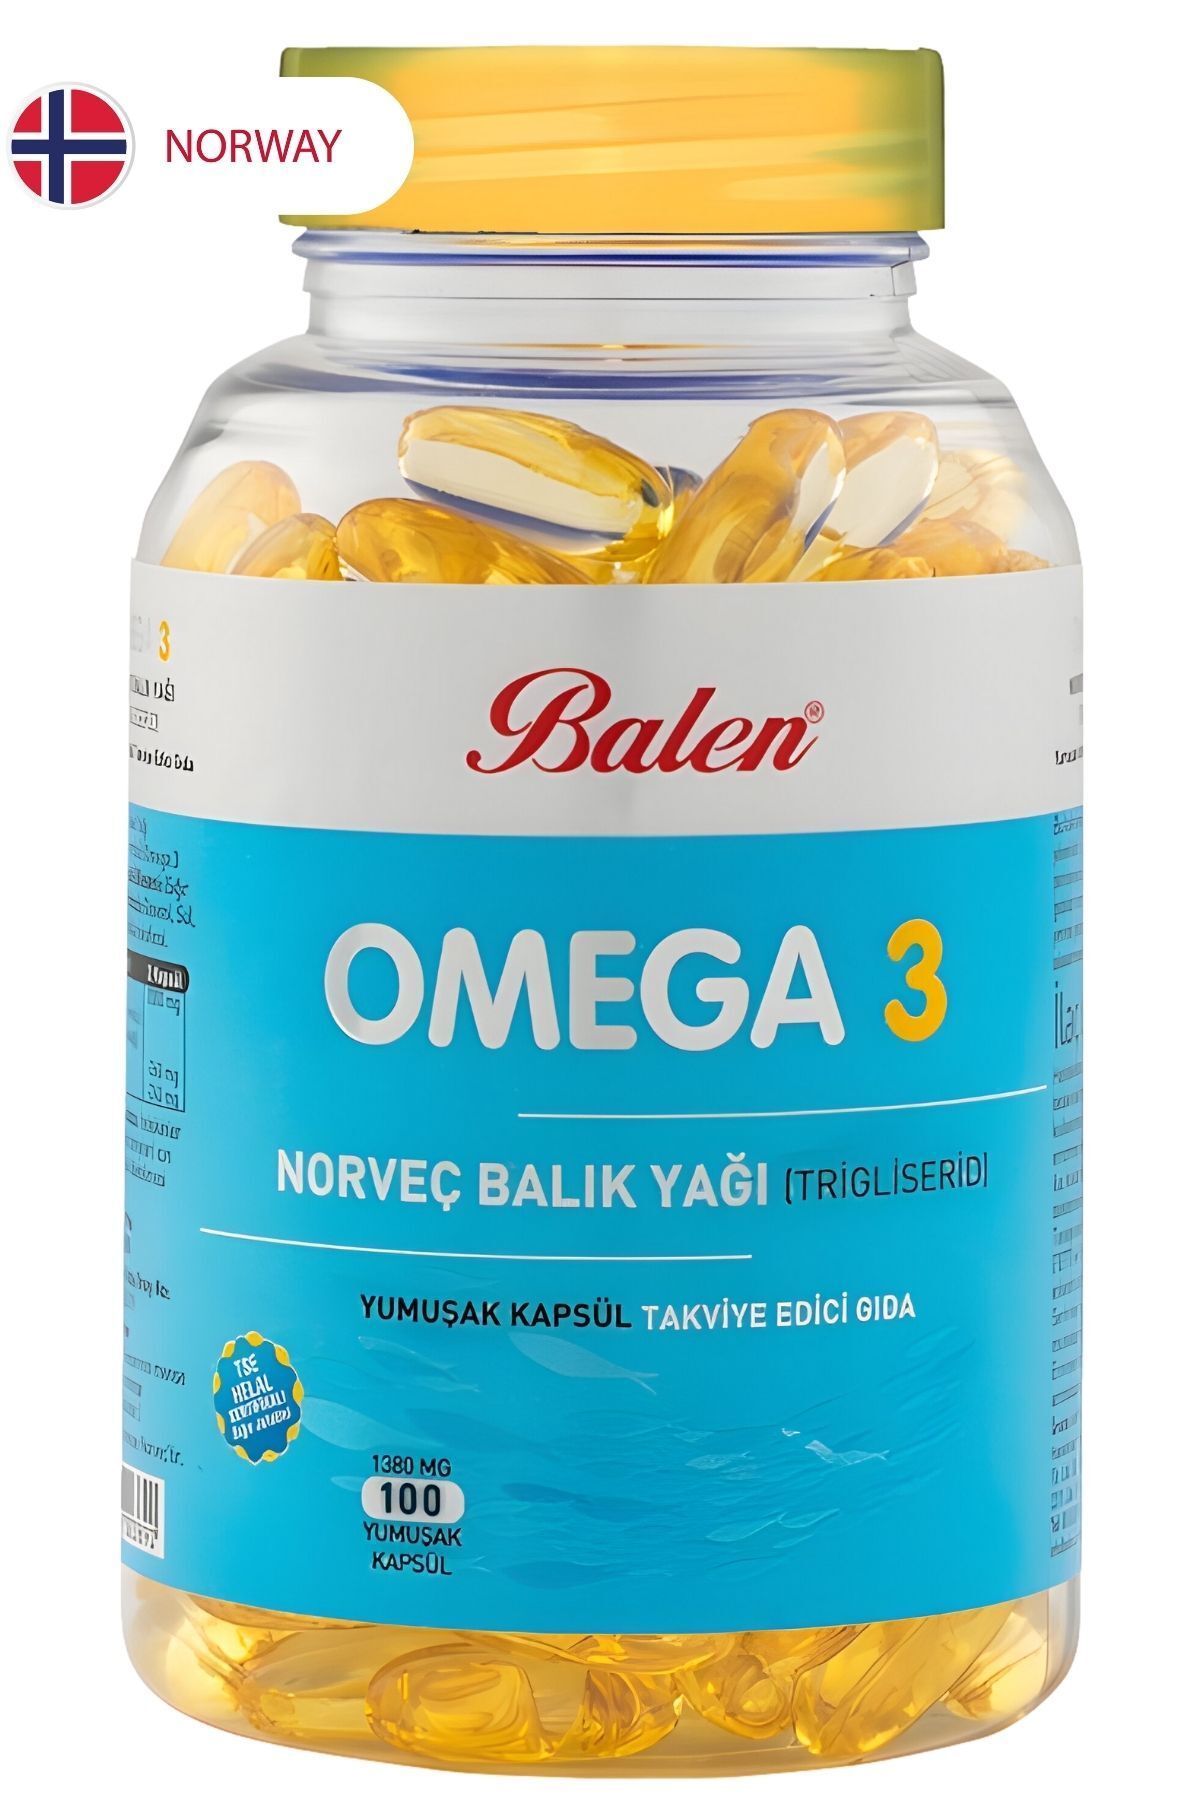 Balen Omega 3 Norveç Balık Yağı BL ()Yumuşak Kapsül 1380 mg 100 Kapsül